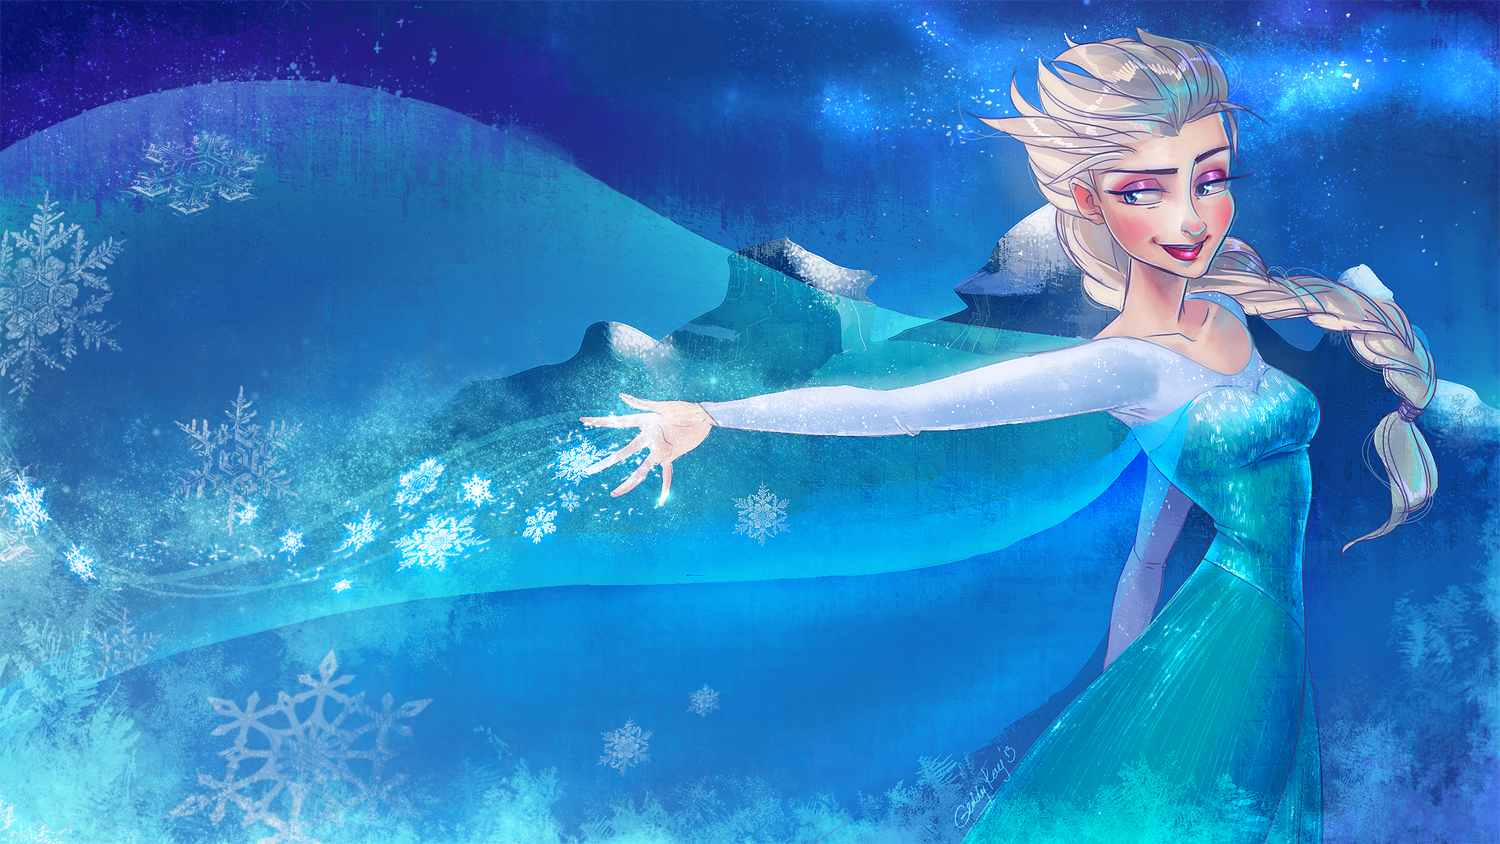 Frozen Elsa by GeddyKay on